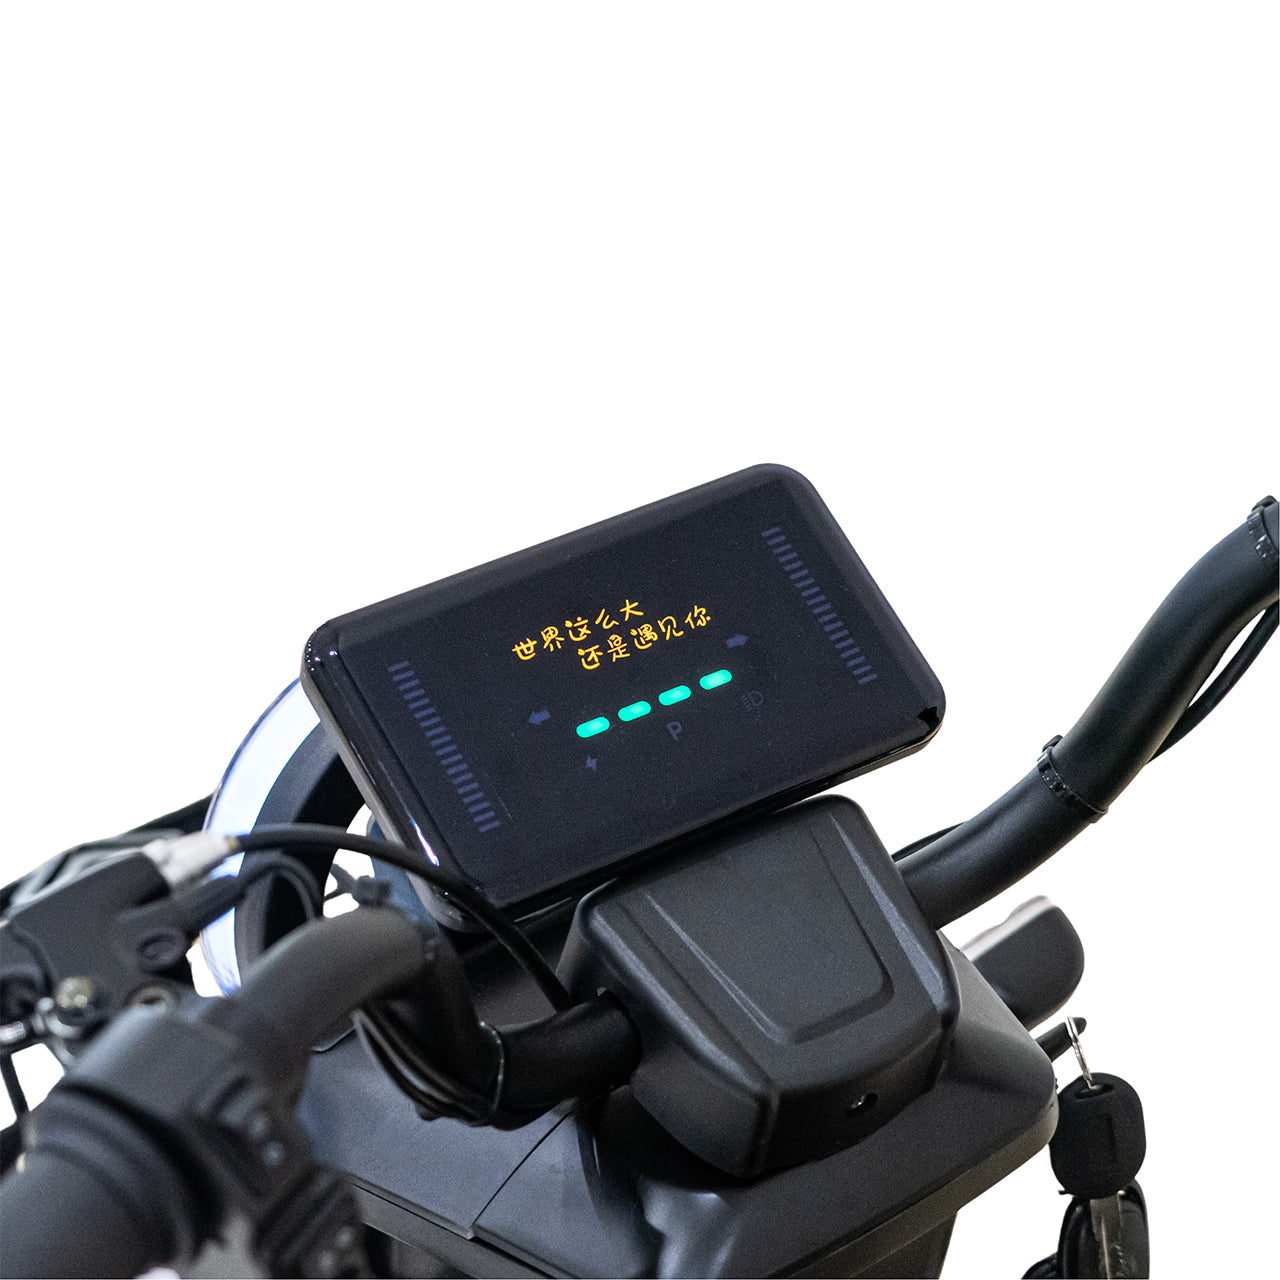 دراجة ثلاثية العجلات كهربائية متوسطة CRONY X2C، مركبة كهربائية بثلاث عجلات